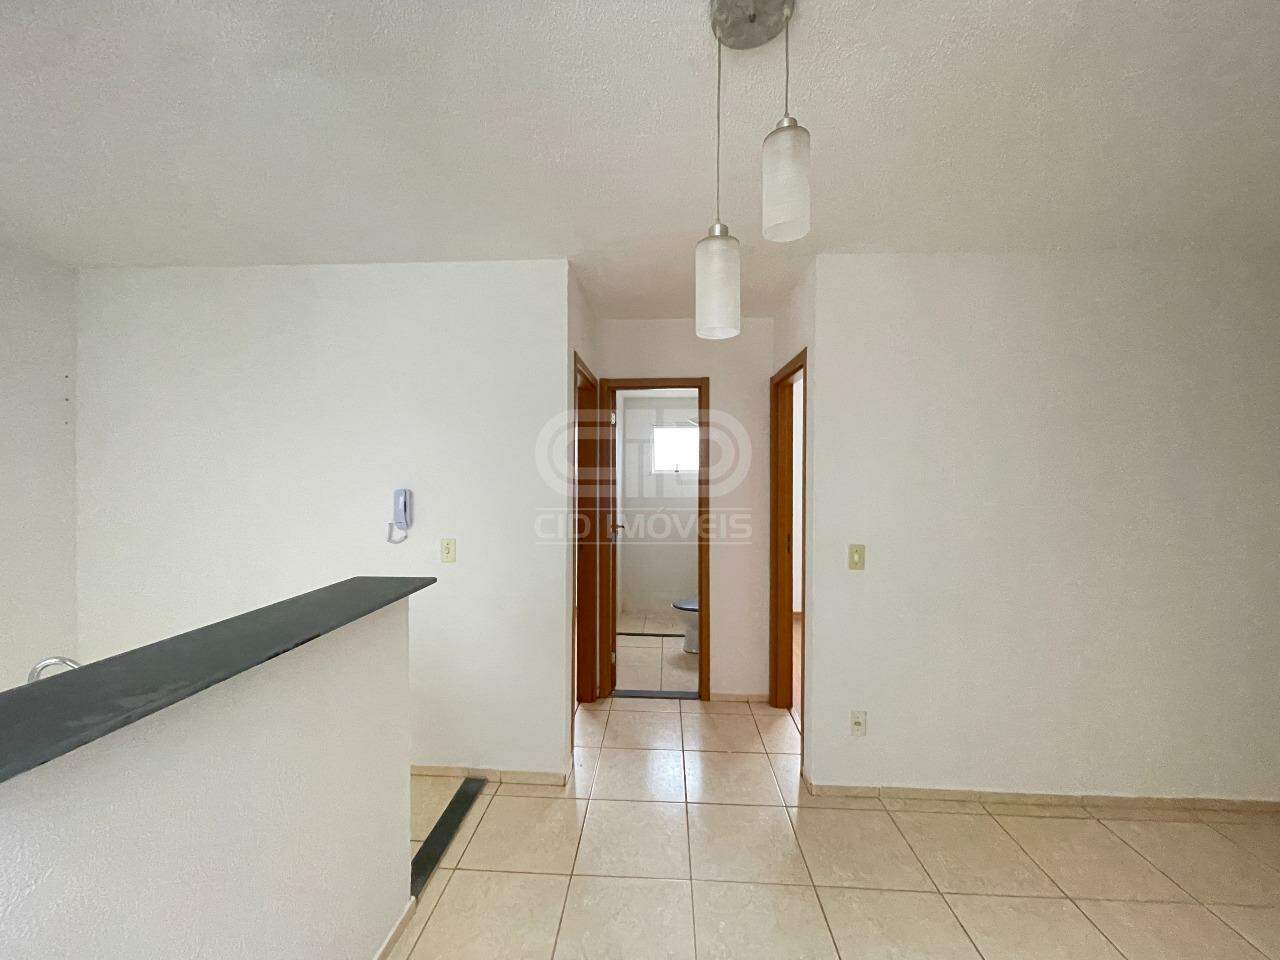 Apartamento, 2 quartos, 40 m² - Foto 4